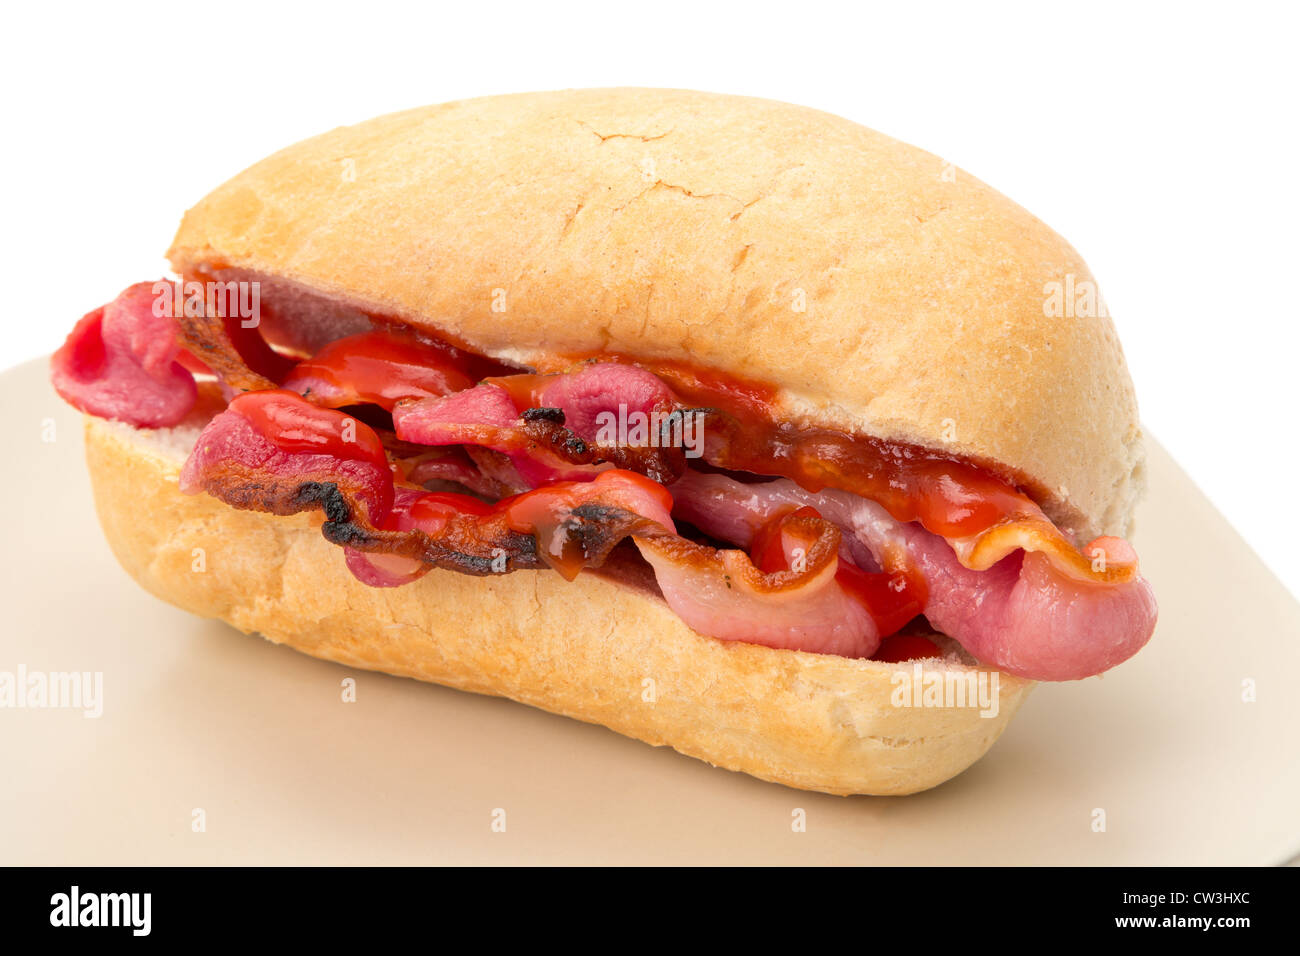 Bacon croccante in un panino con il ketchup - profondità di campo - studio shot con uno sfondo bianco Foto Stock